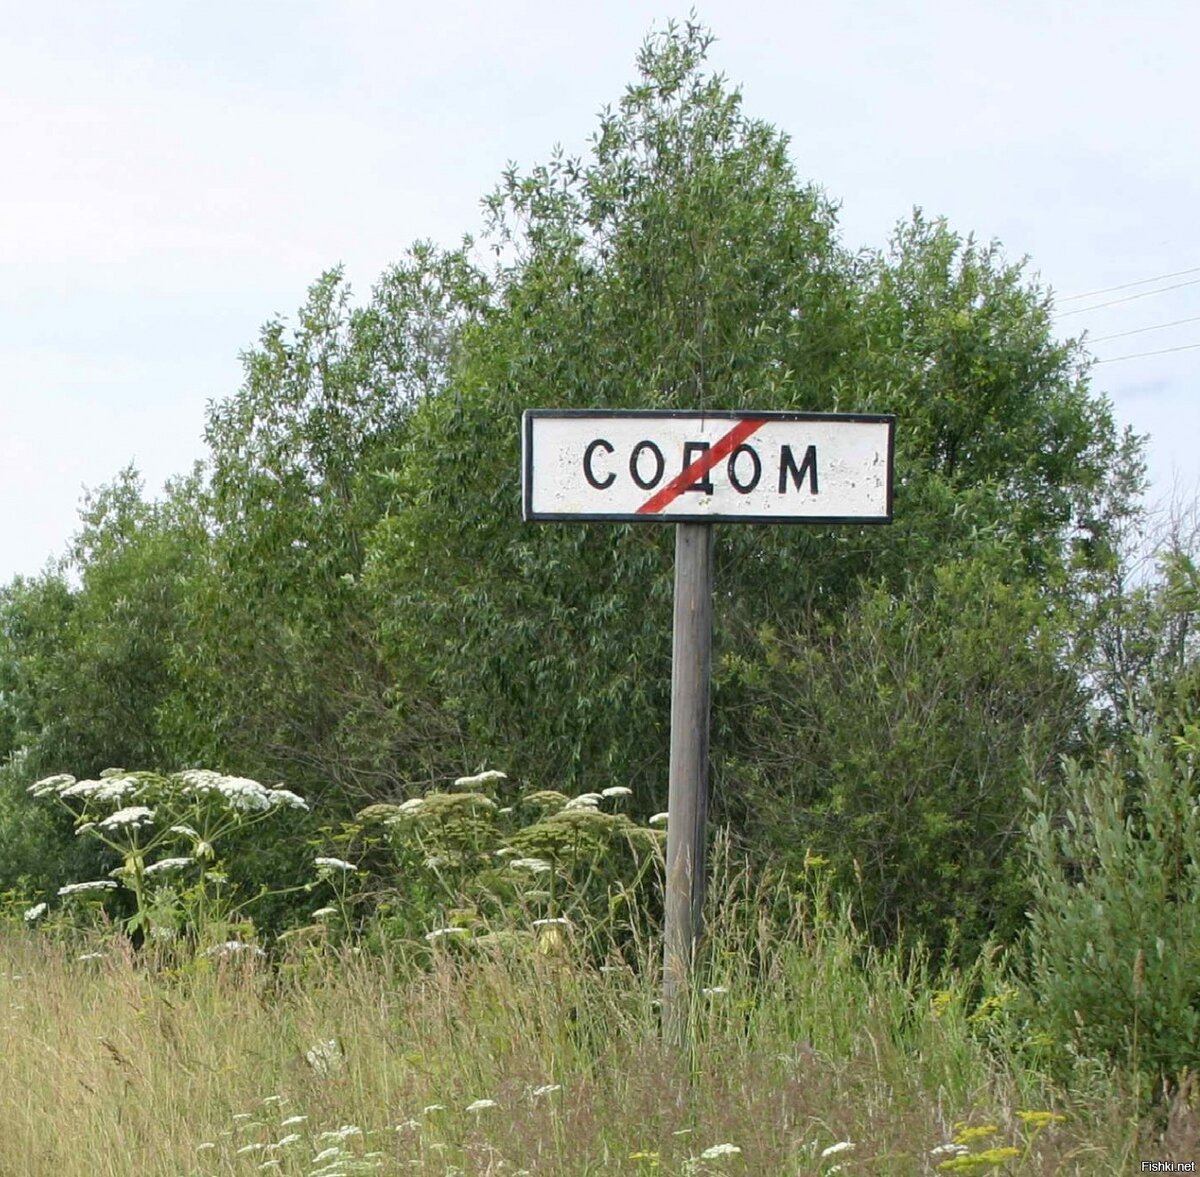 Название деревень в России